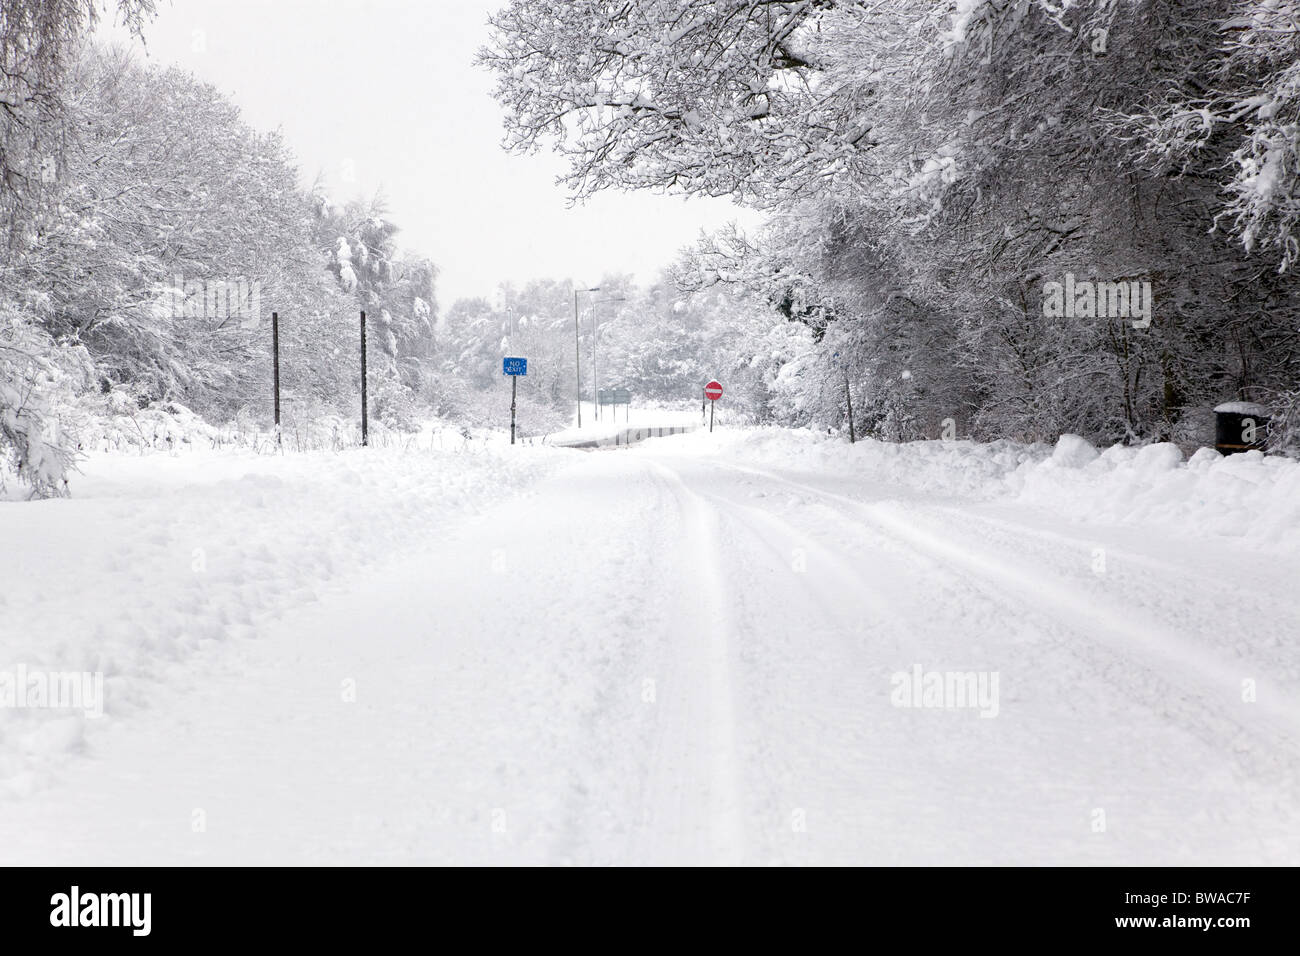 Une route couverte de neige avec aucun signe d'entrée et de sortie dans la distance, l'accent est mis sur les panneaux. Banque D'Images